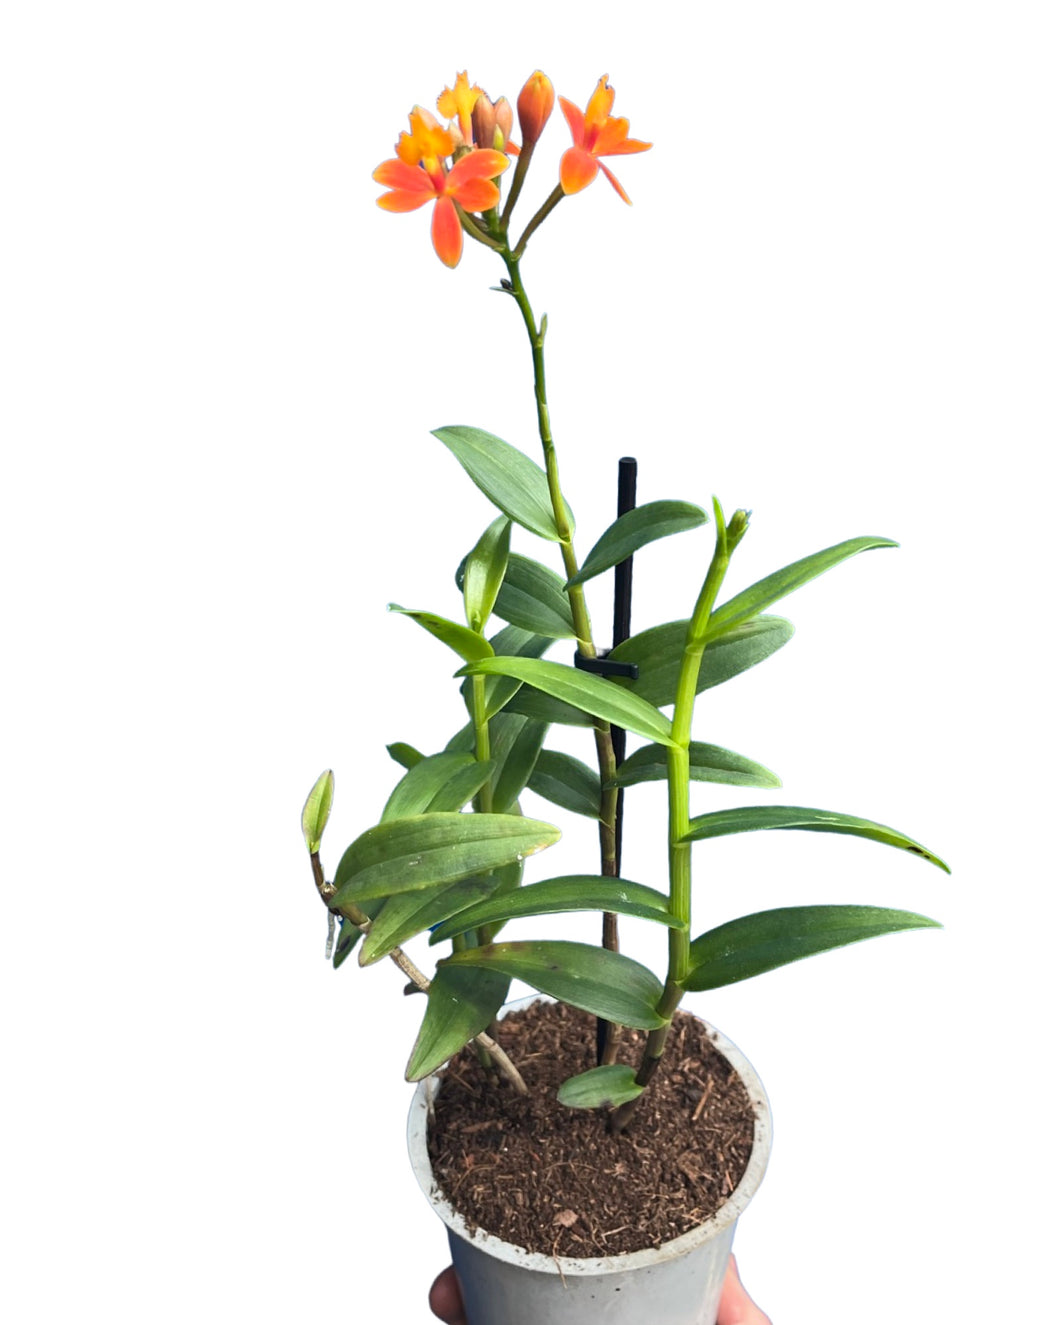 Epidendrum ibaguense 'Ballerina' gx (orange flower)